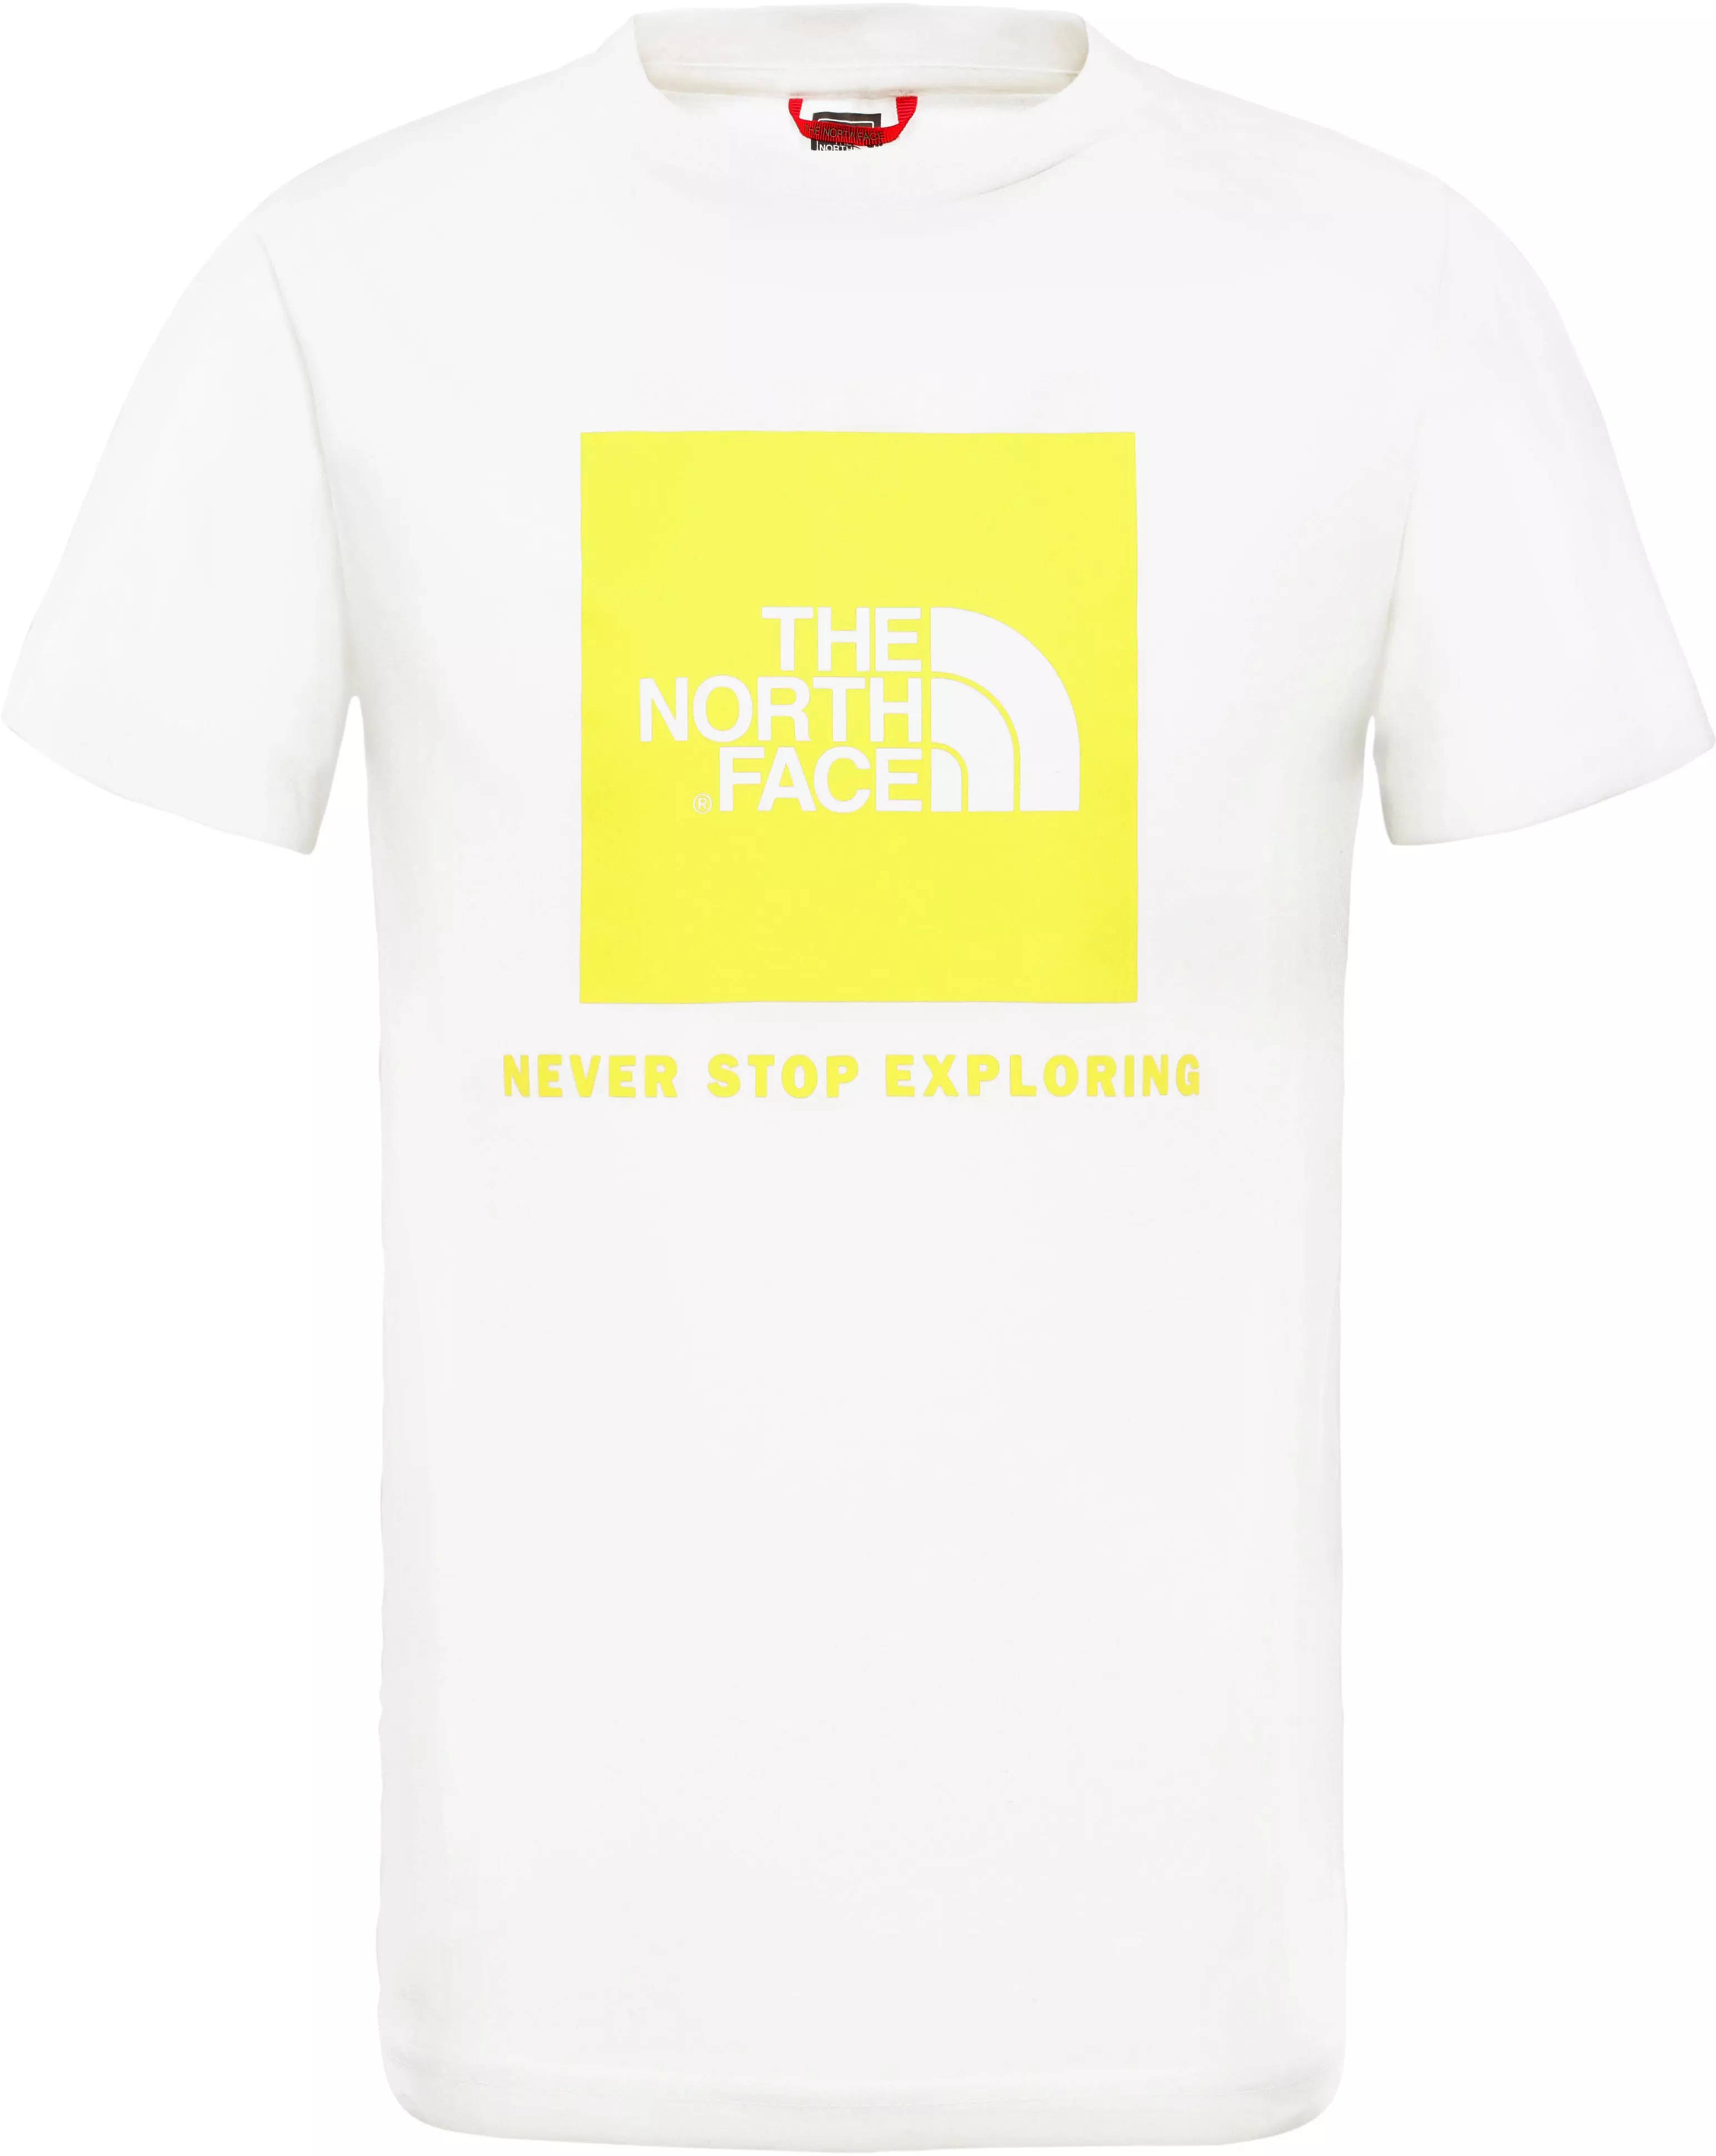 The North Face Youth Box T Shirt Kinder Tnf White Tnf Lemon Im Online Shop Von Sportscheck Kaufen